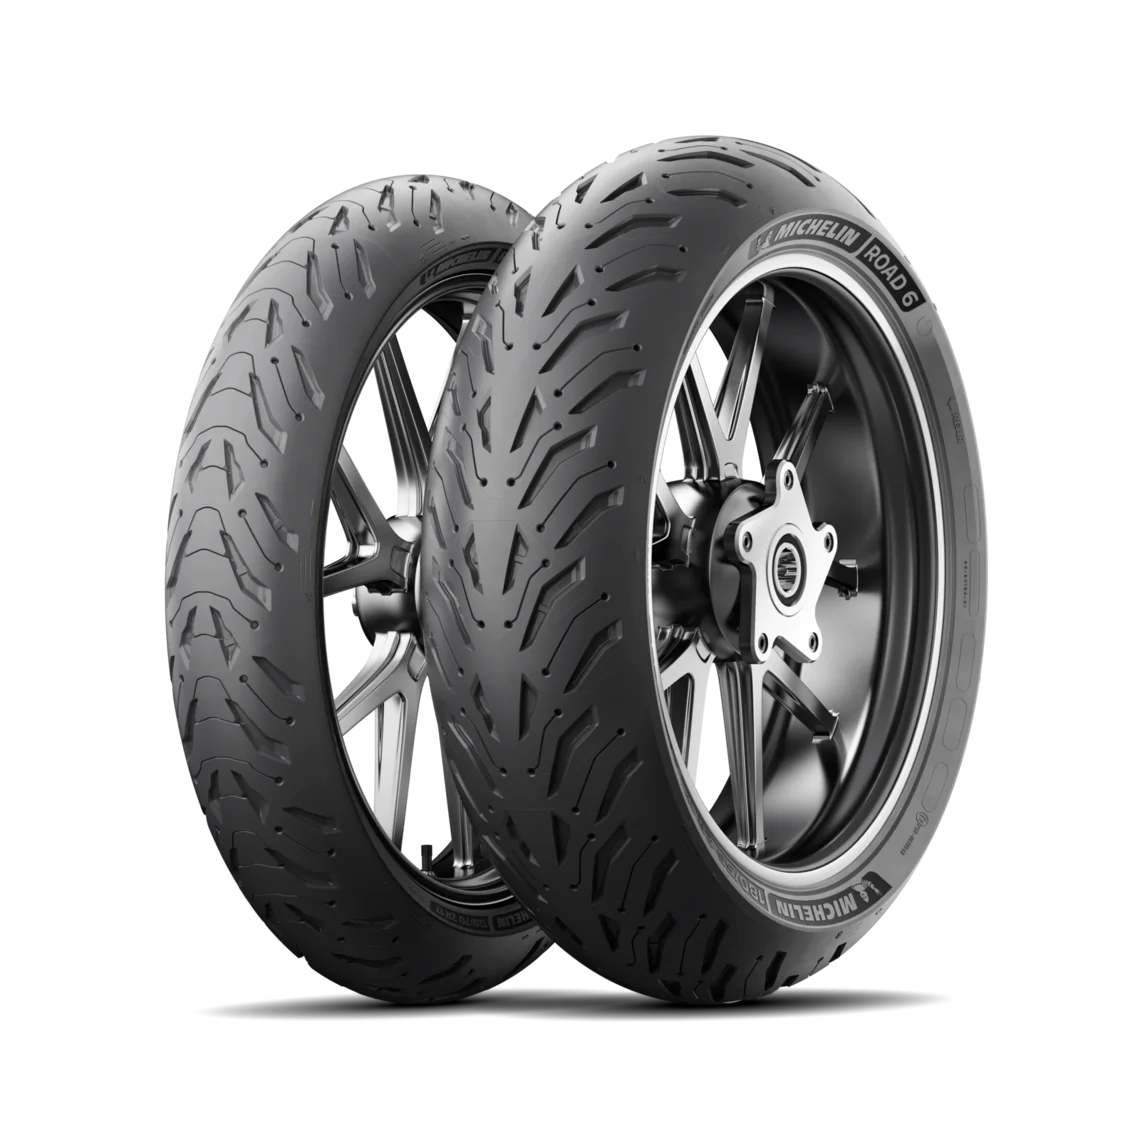 Michelin Michelin 110/70 R17 54W ROAD 6 pneumatici nuovi Estivo 